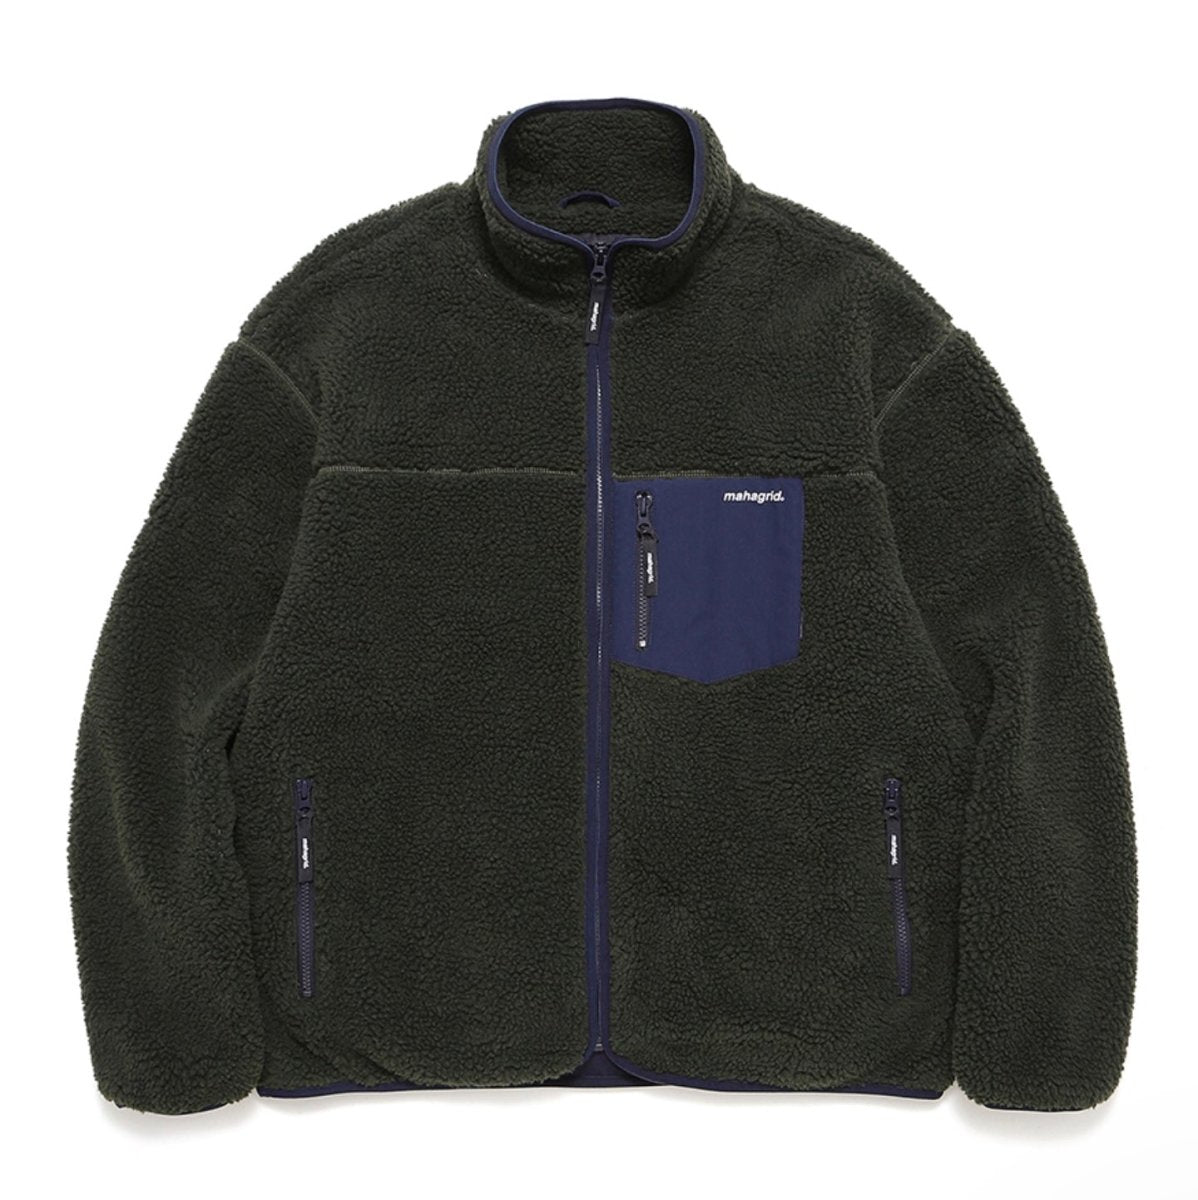 Mahagrid Sherpa Fleece Jackets - S / Olive